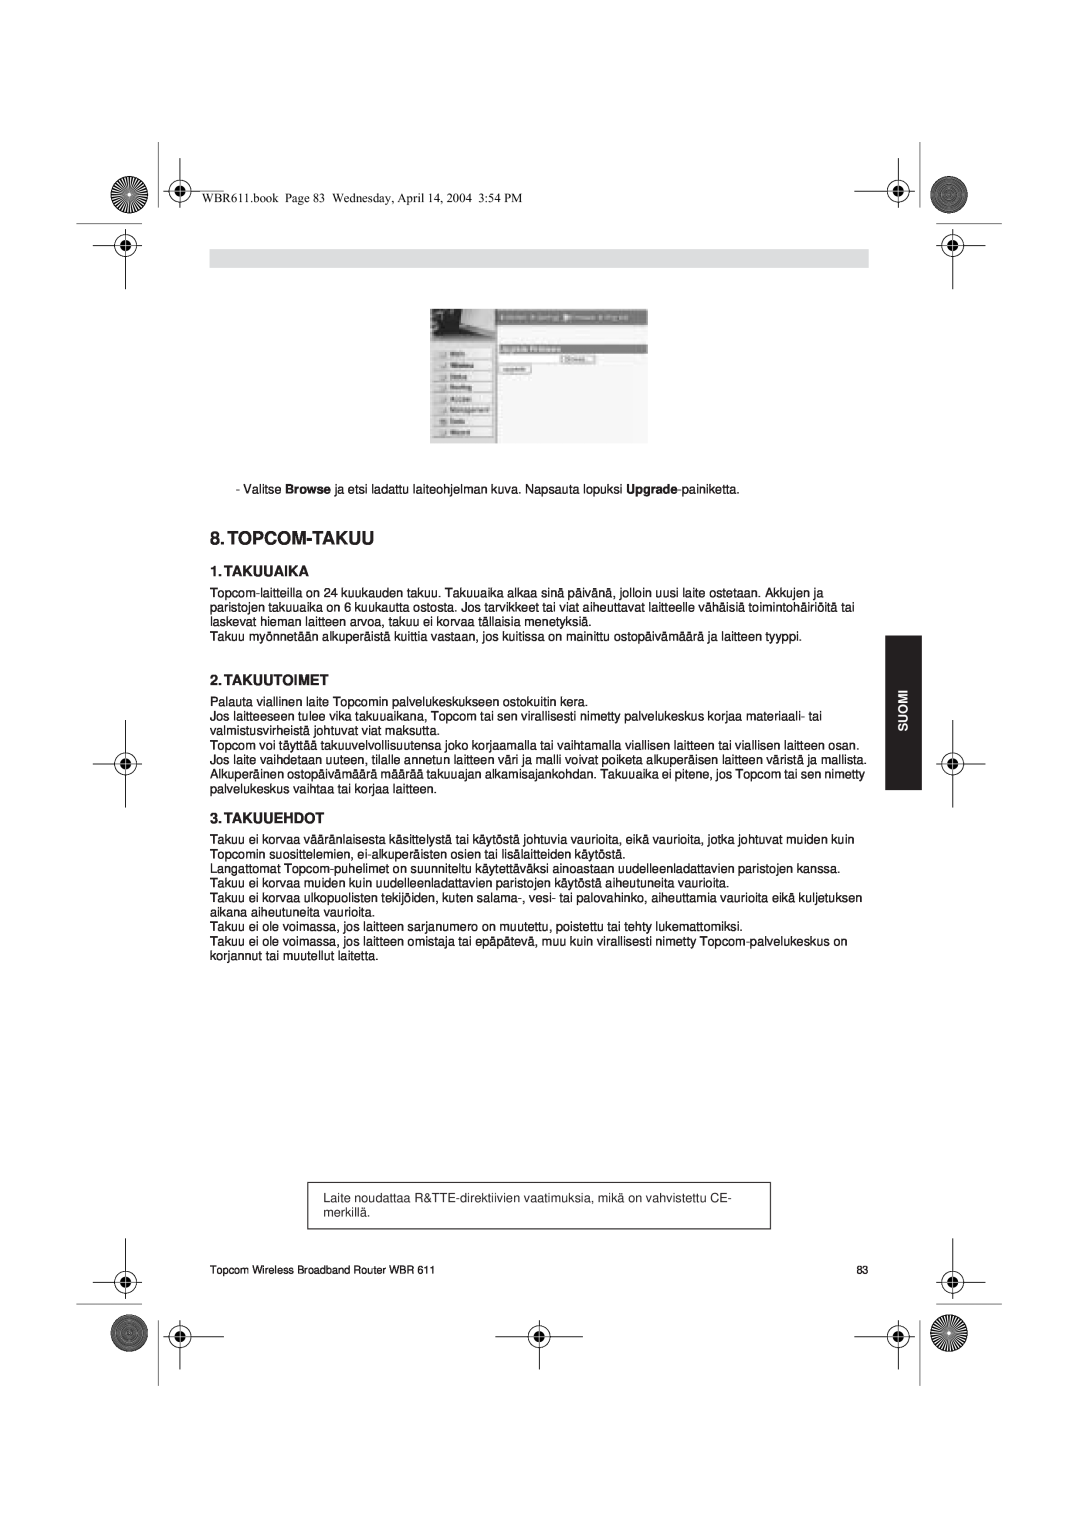 Topcom WBR 611 manual do utilizador Topcom-Takuu, Takuuaika, Takuutoimet, Takuuehdot 